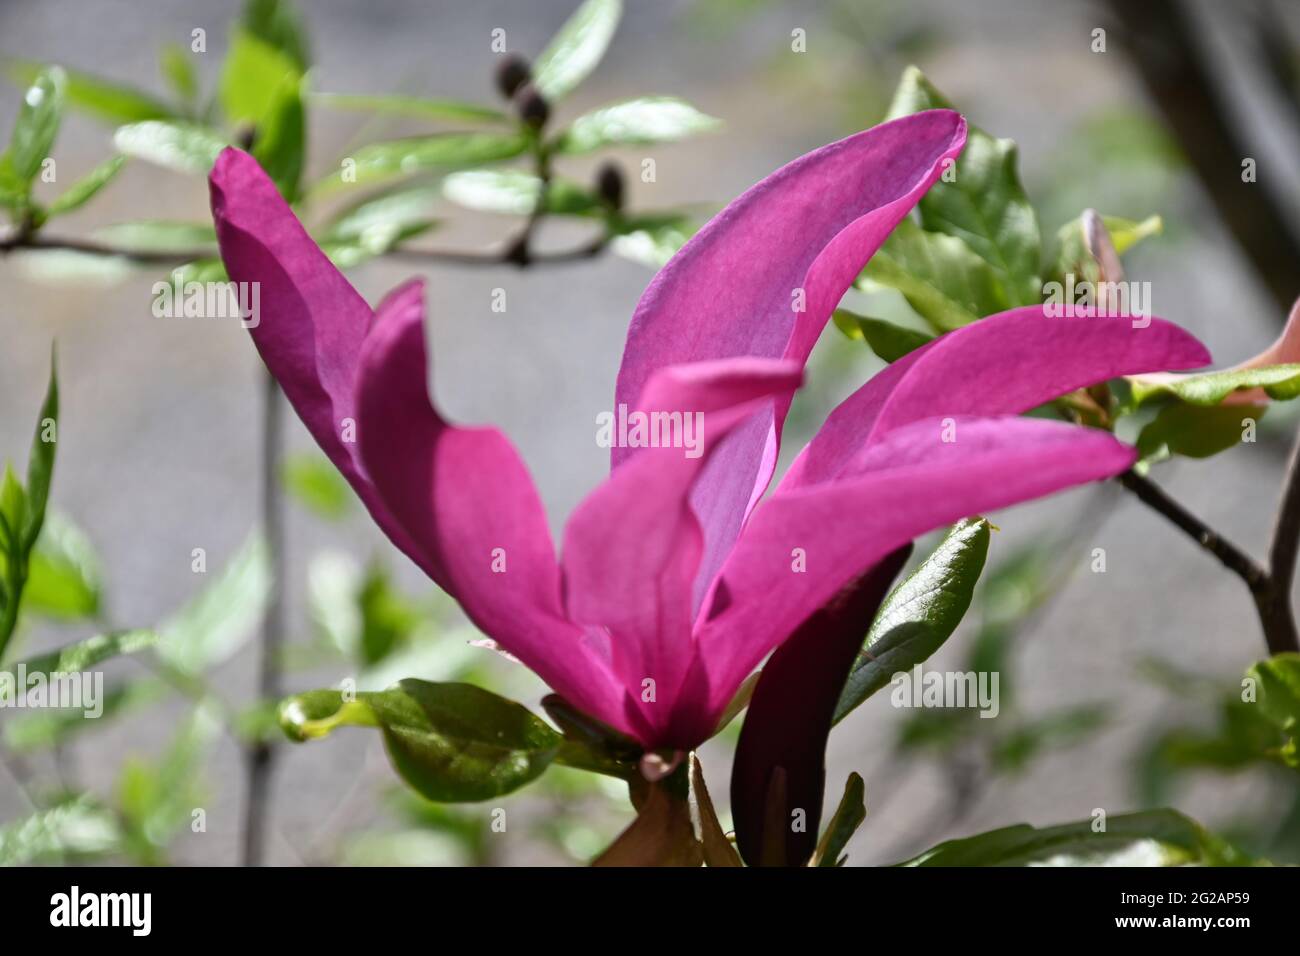 Wunderschöne geöffnete rosarote Magnolienblüte Stock Photo